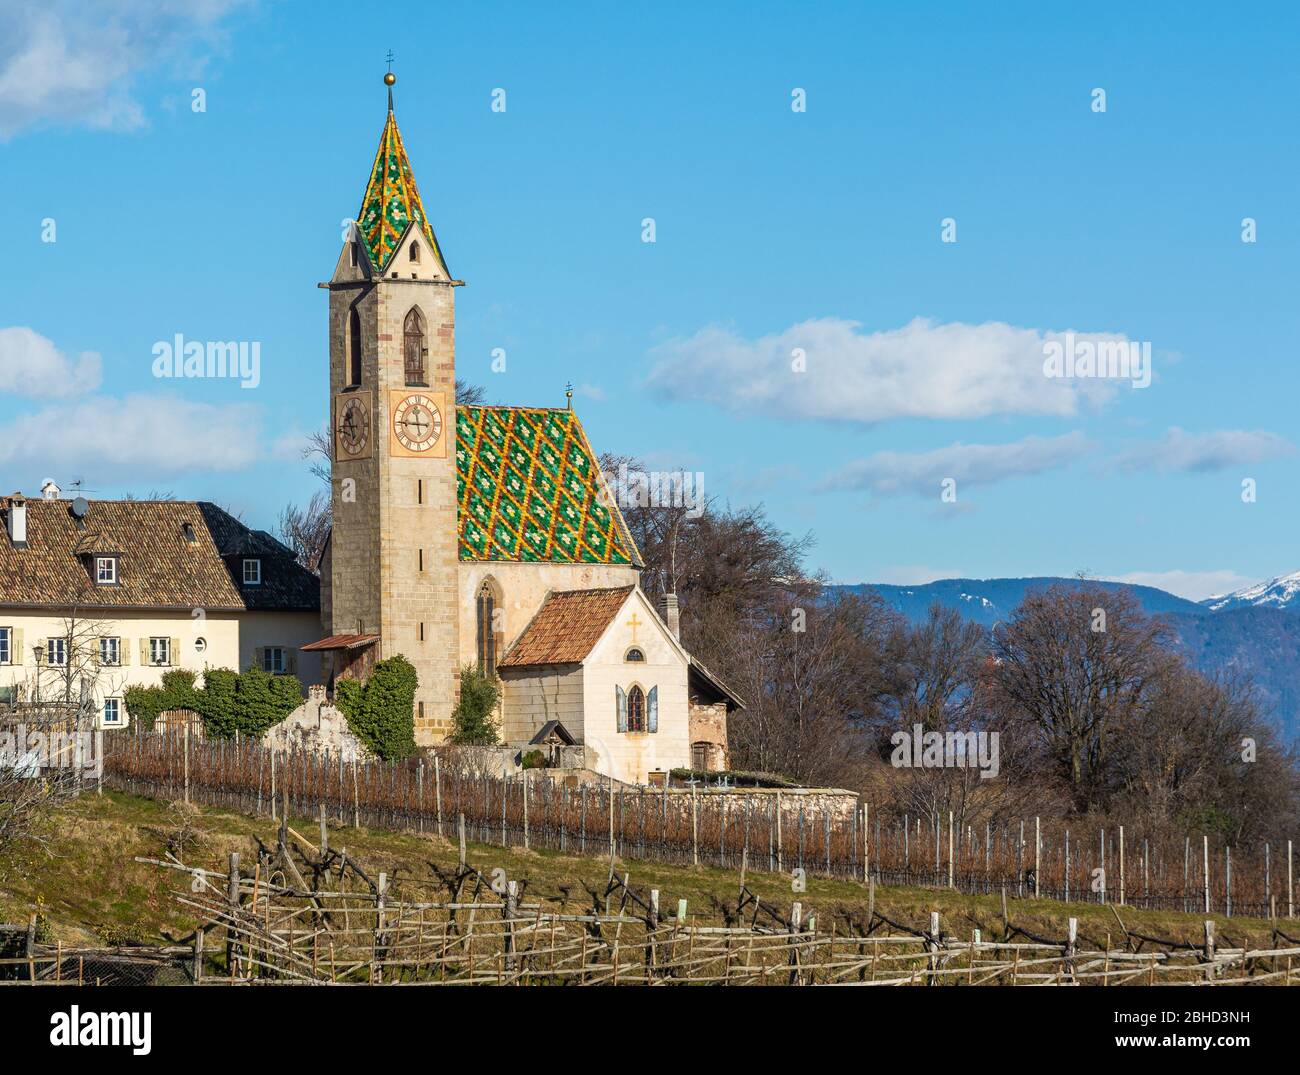 St. Vigilius Kirche in Castelvecchio, Kaltern in Südtirol, Norditalien, Europa. Kirche im gotischen Stil Stockfoto